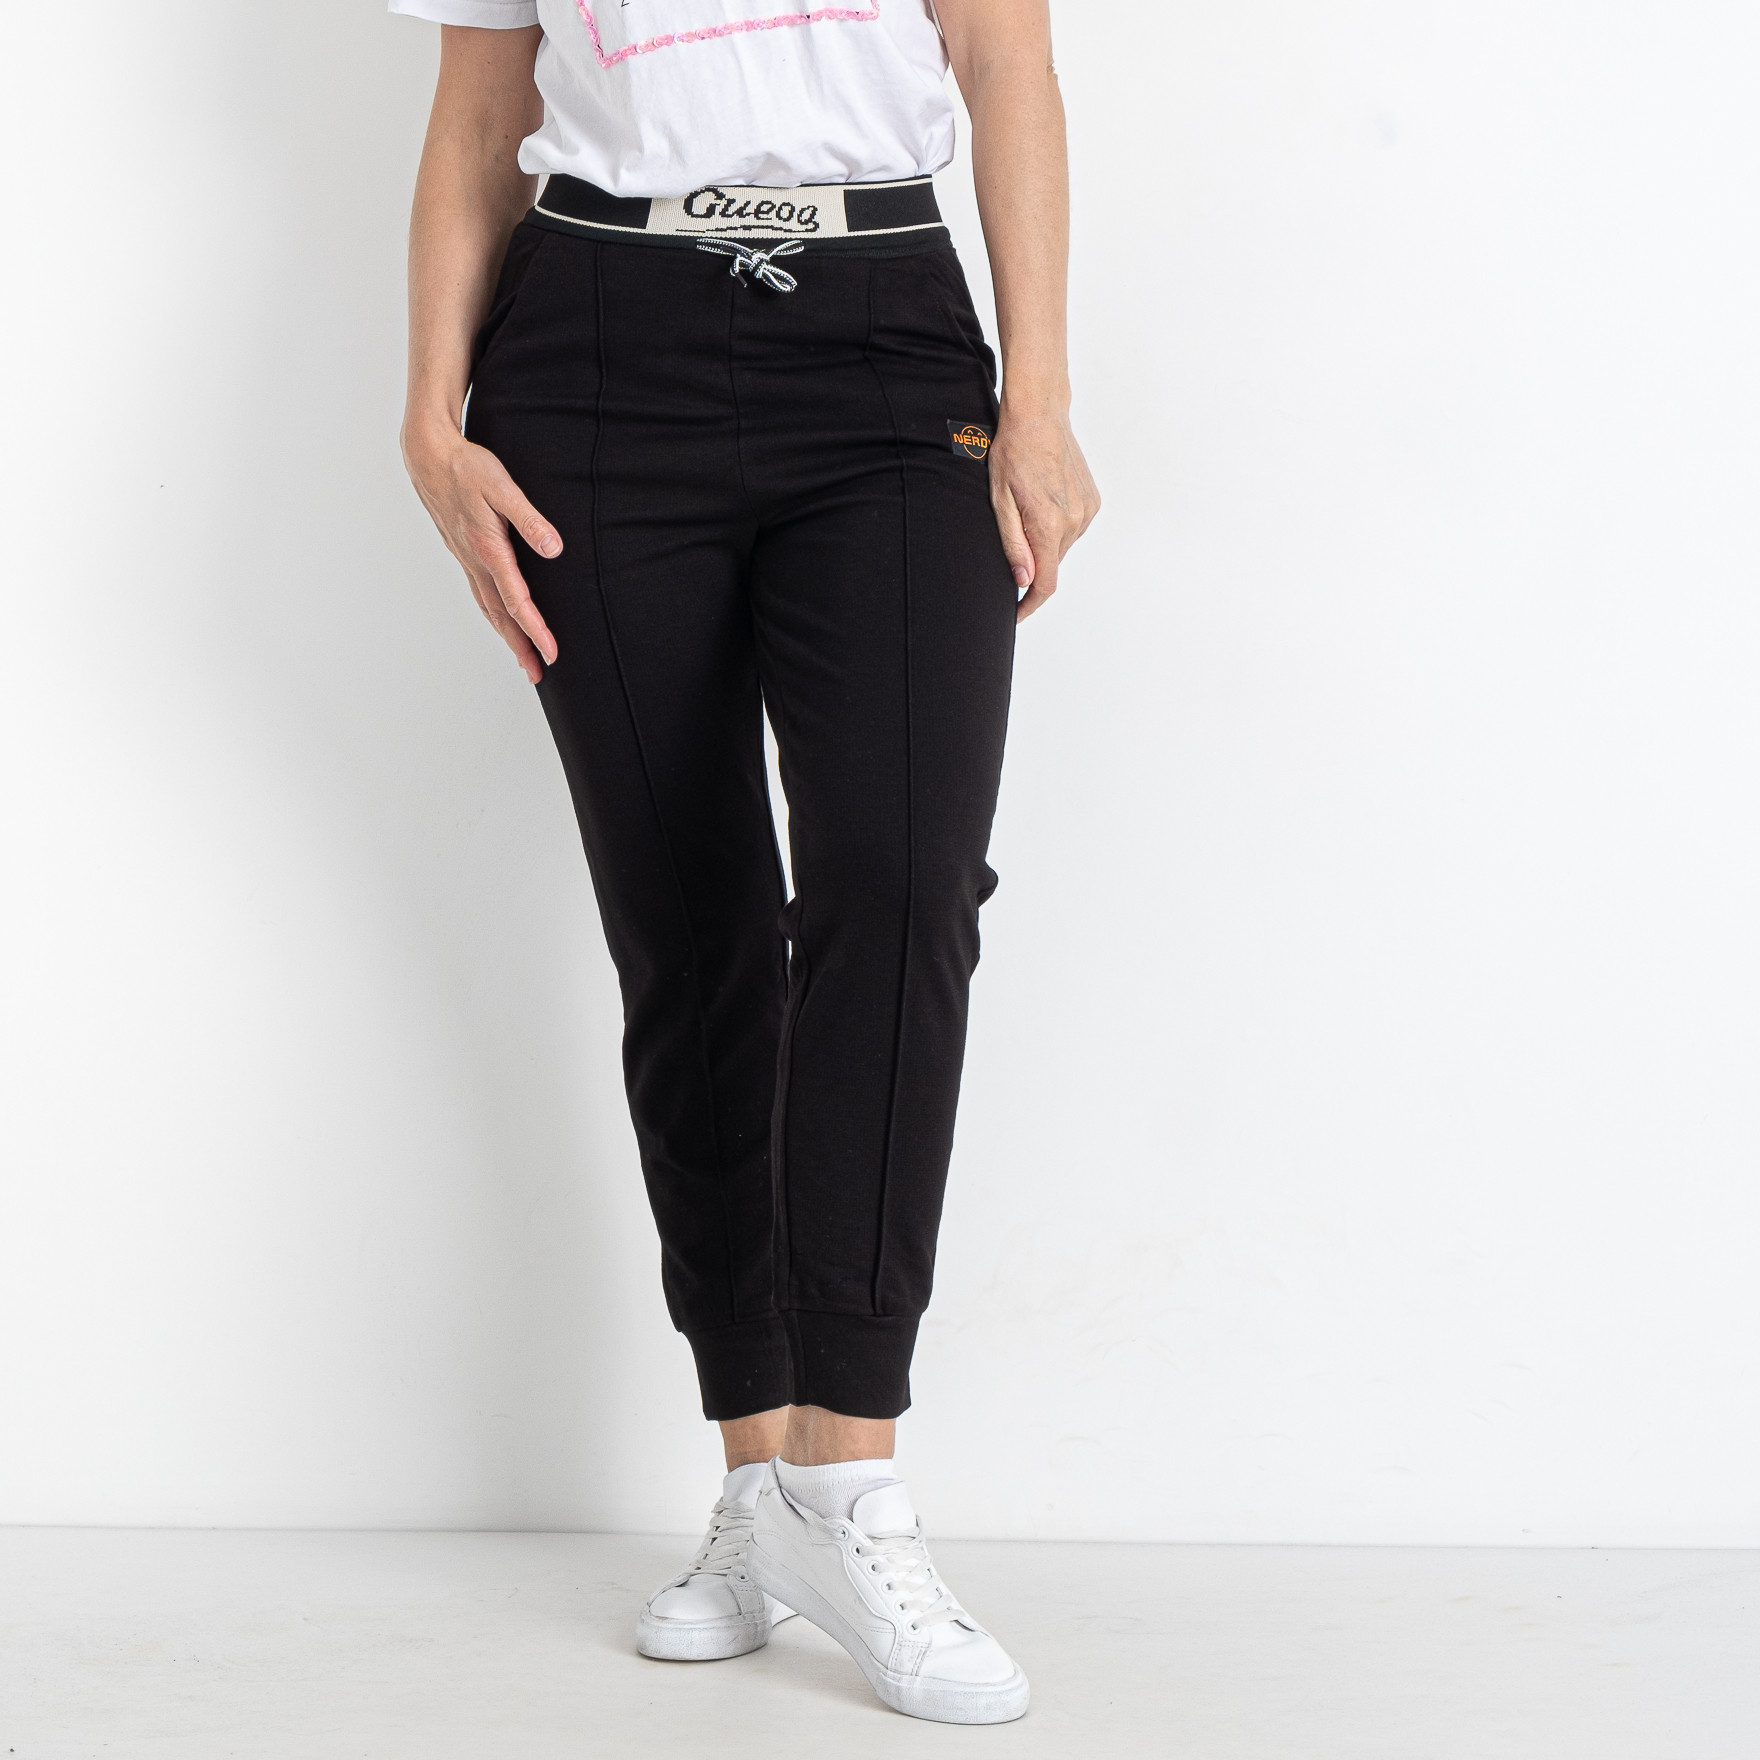 0701-1 черные женские спортивные штаны (5 ед. размеры батал: XL. 2XL. 3XL. 4XL. 5XL)